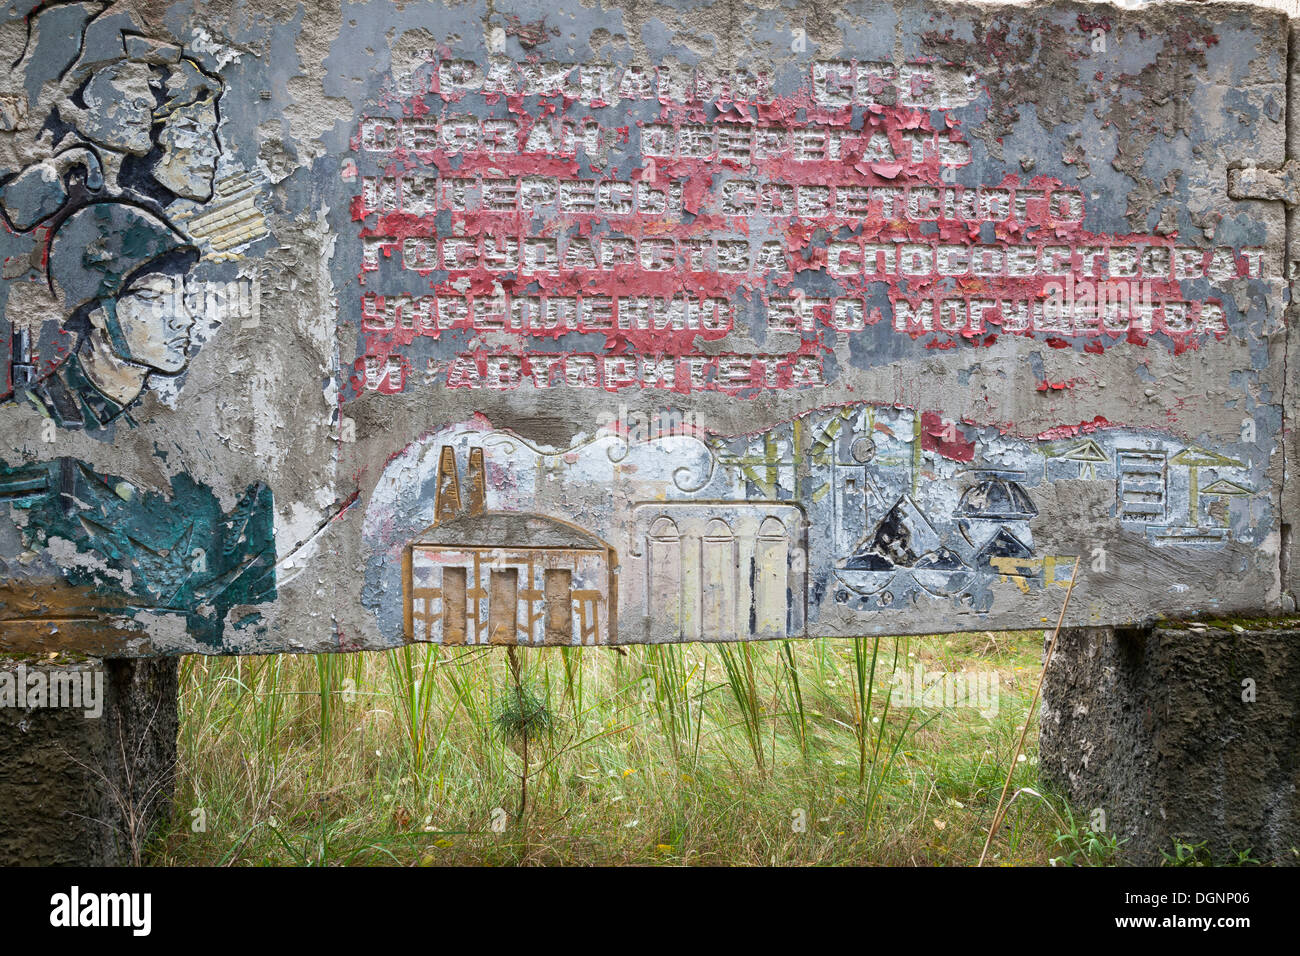 Sowjetische Propaganda auf einer verlassenen sowjetischen Raketenbasis, Vogelsang, Brandenburg, Deutschland Stockfoto